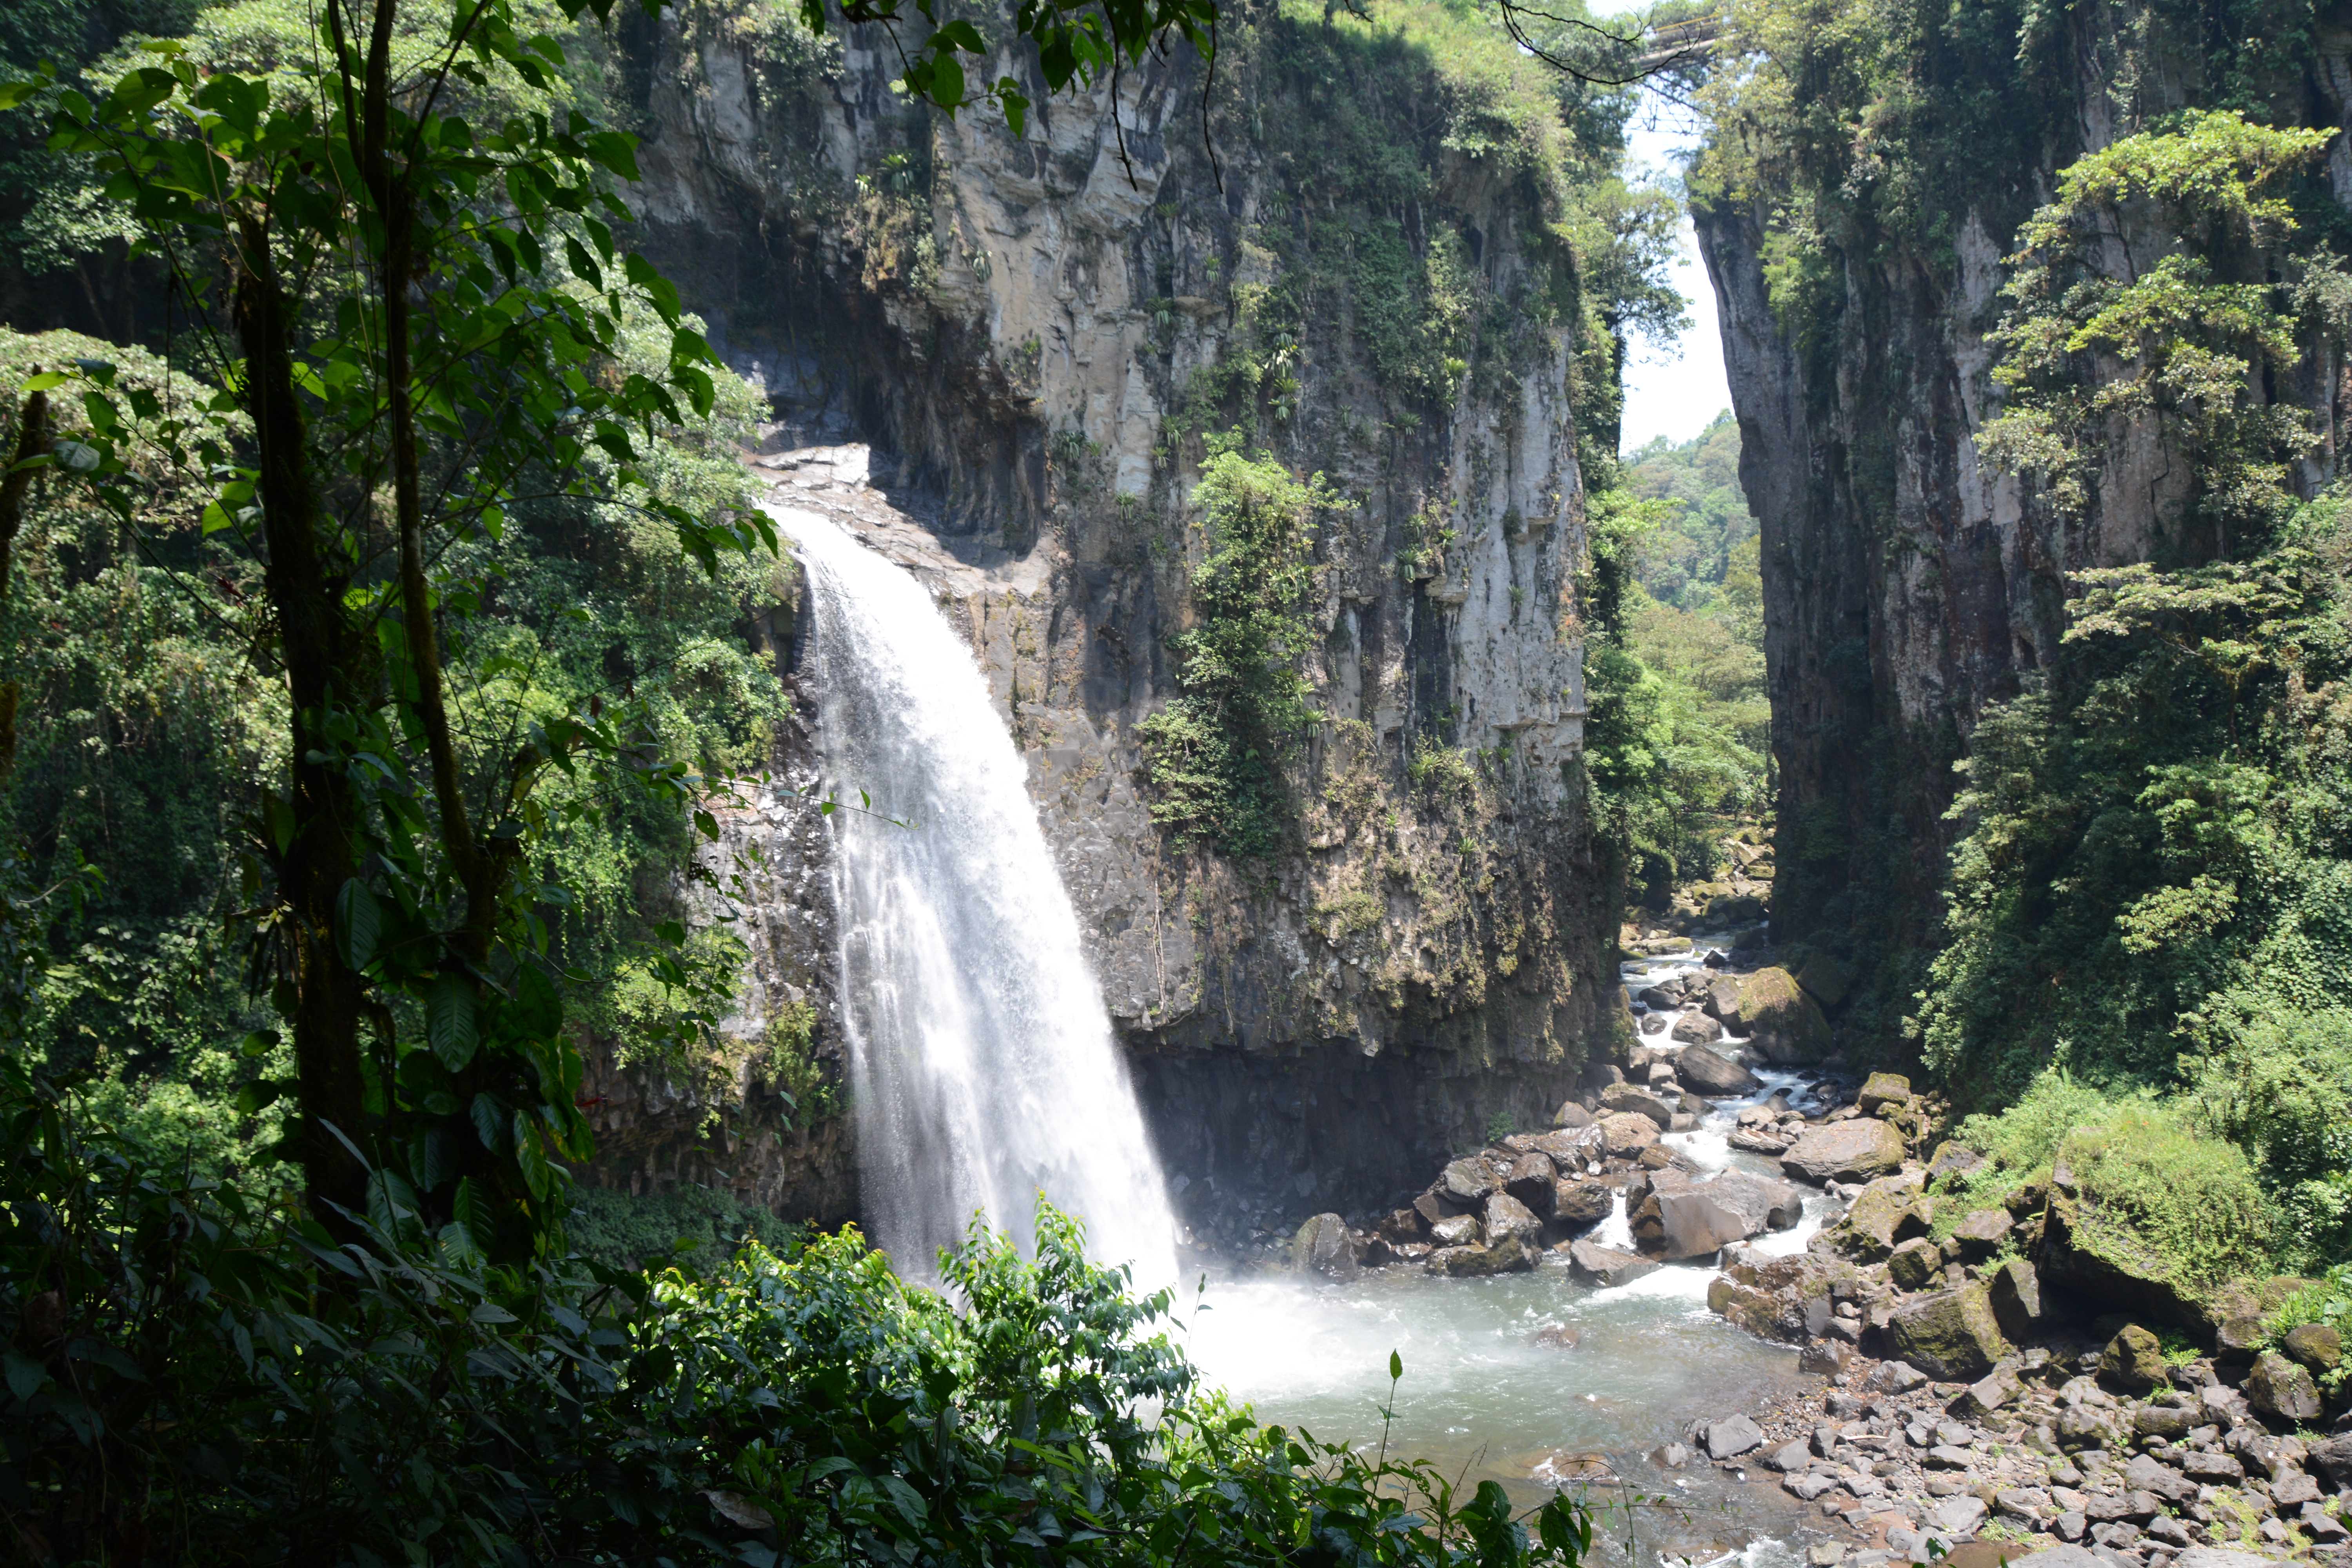 Cascada de Texolo/Texolo Falls near Xico (Photo: parachileldexalapa.wordpress.com)